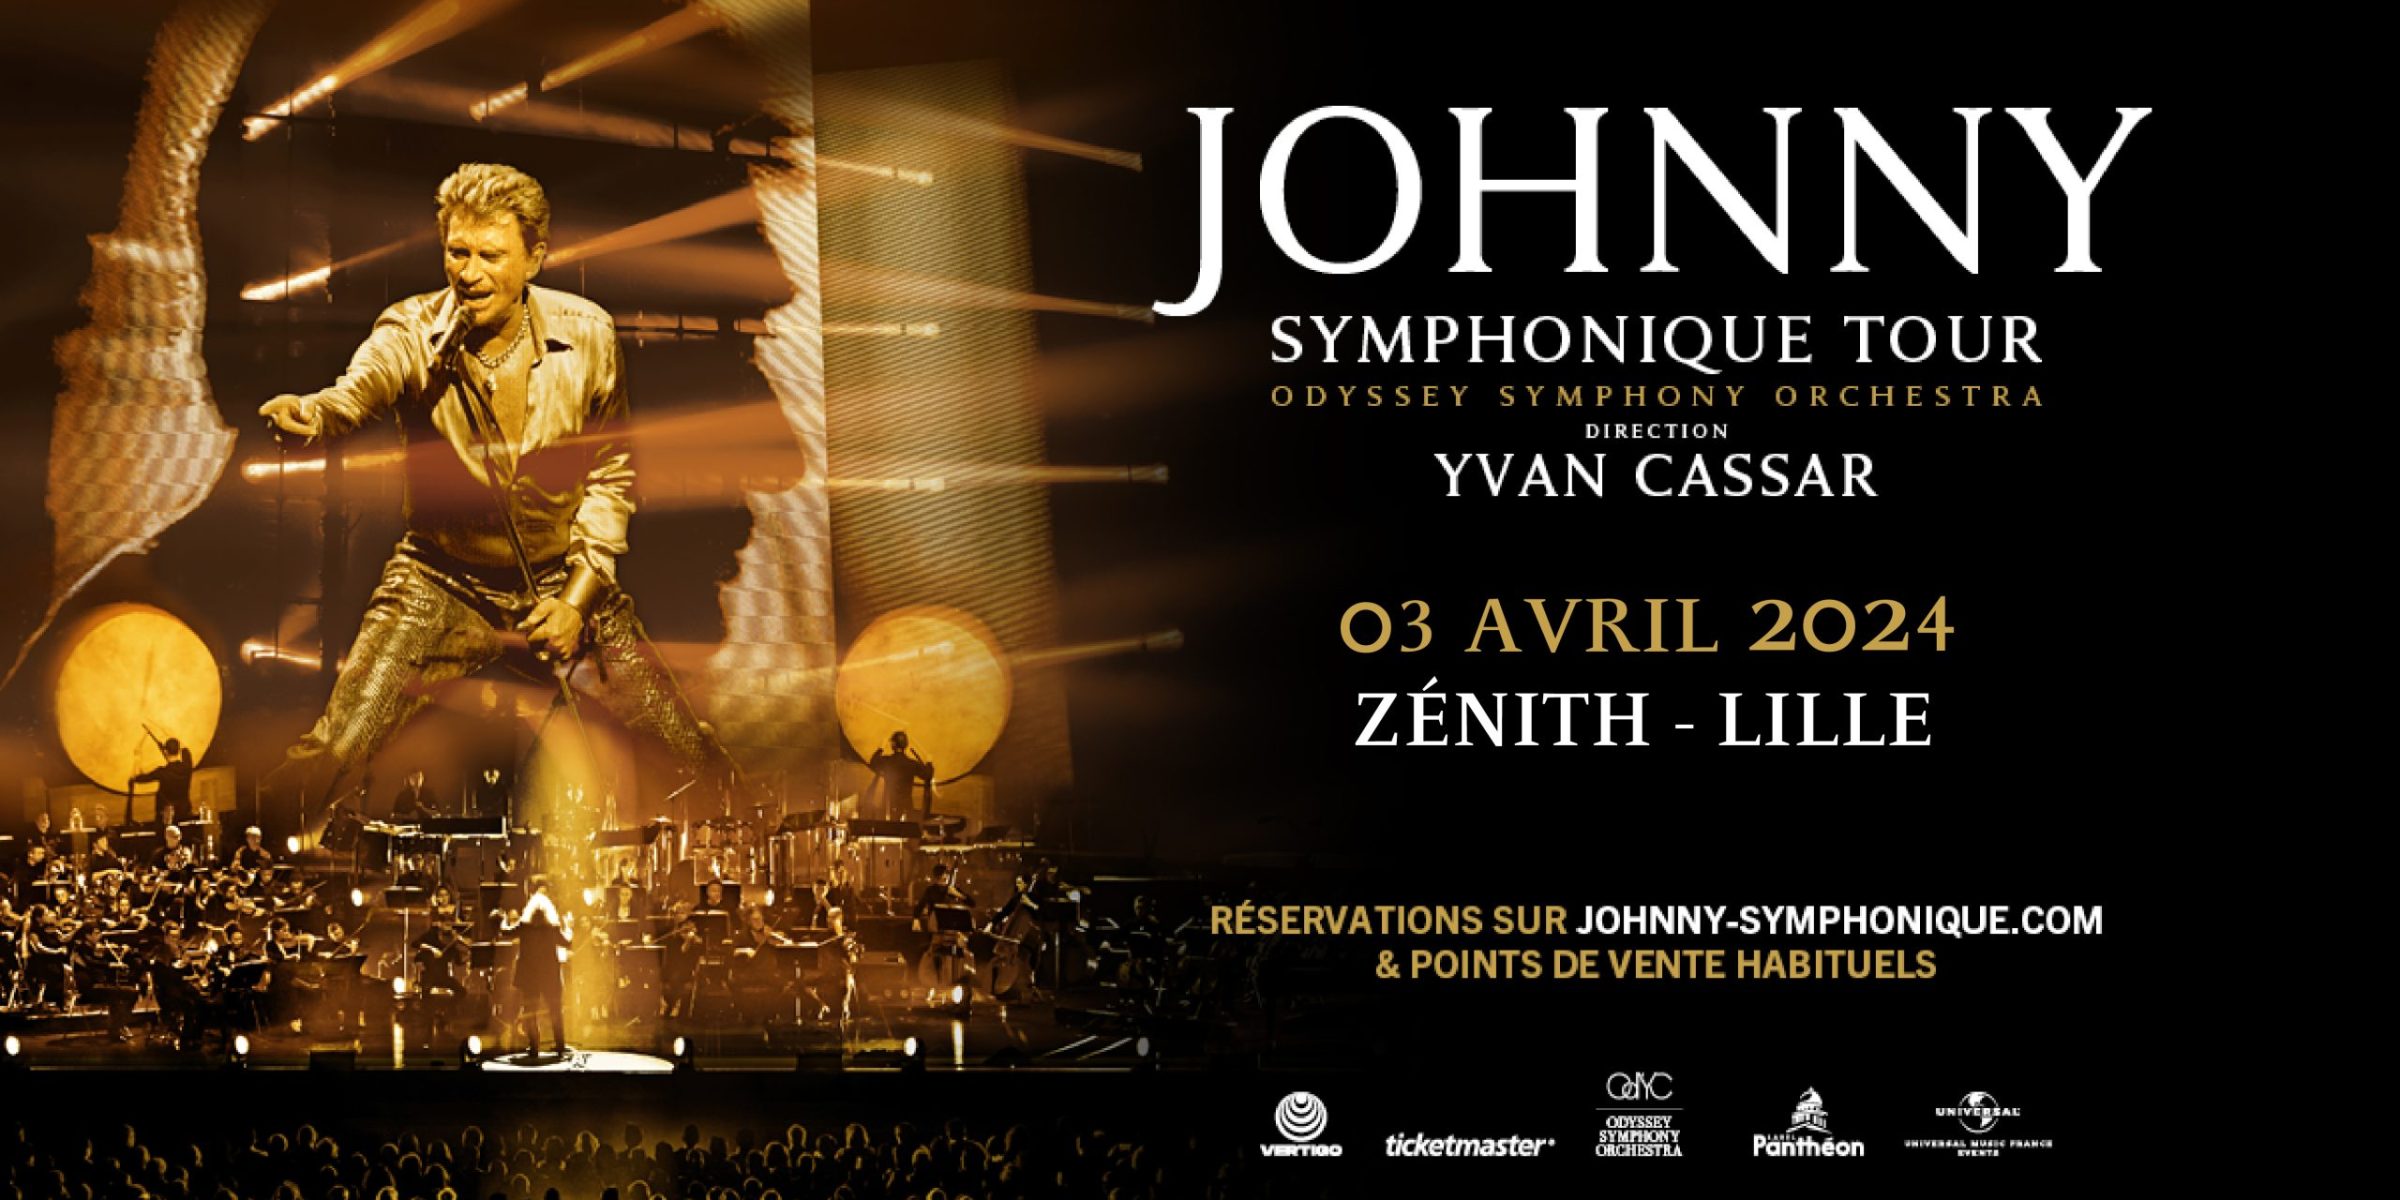 johnny symphonique tour 2024